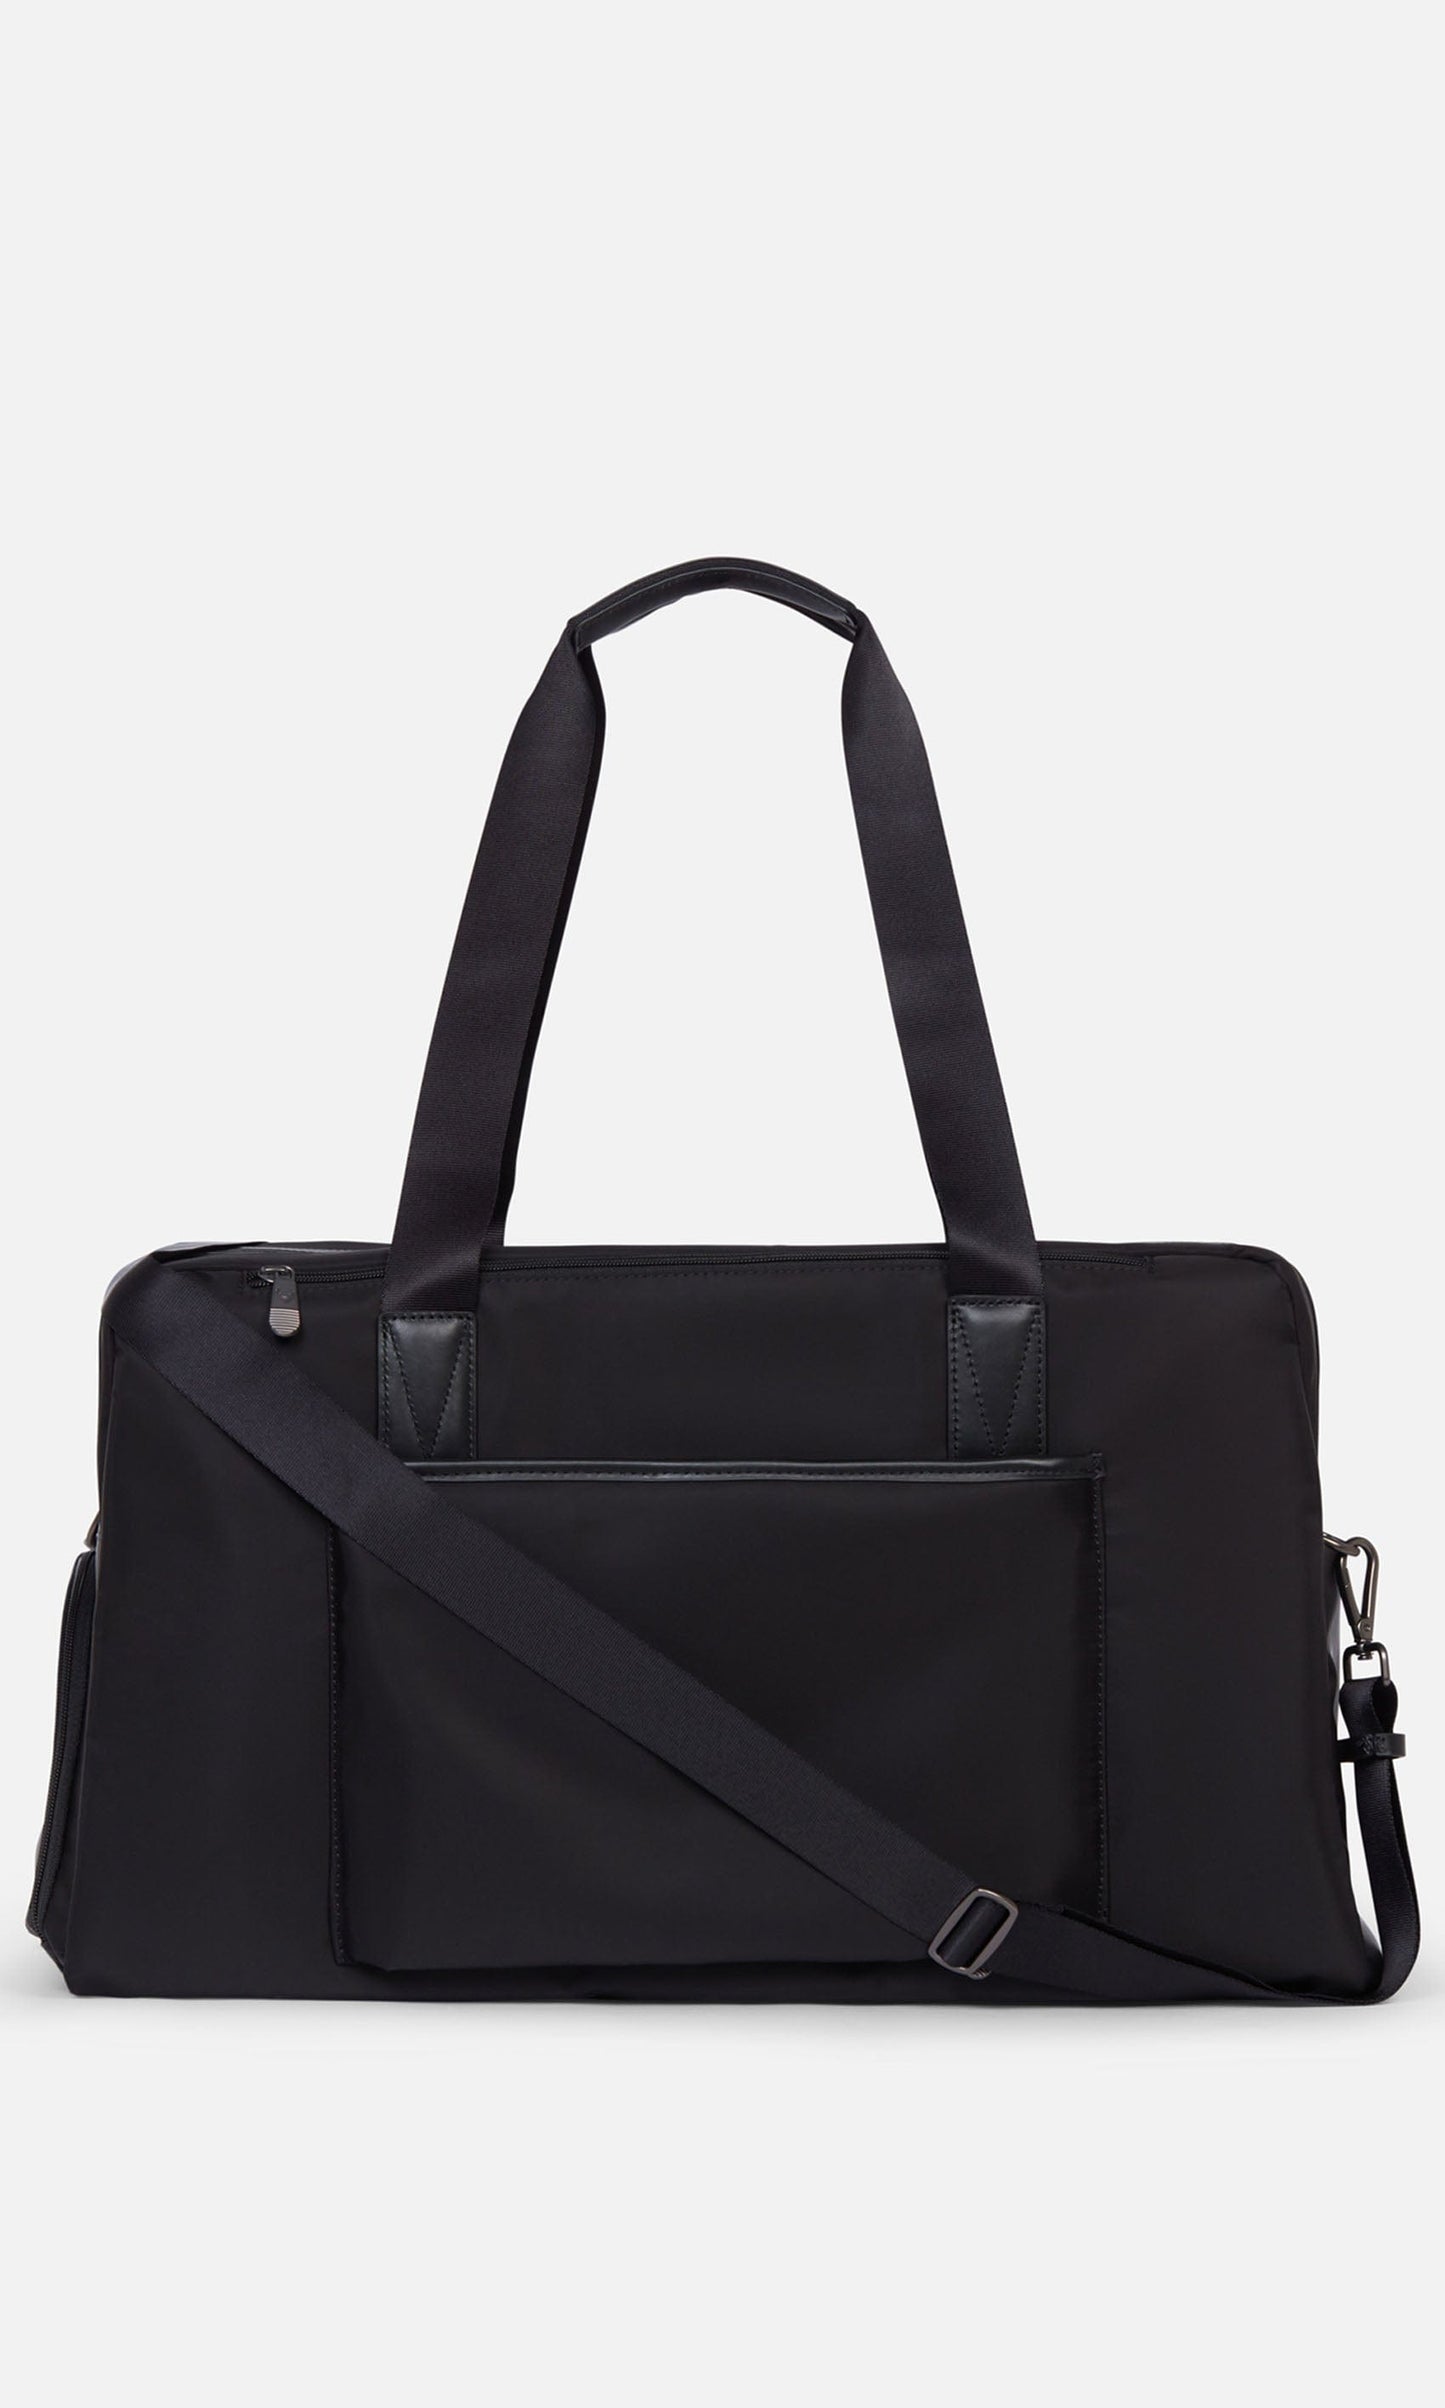 Antler Luggage -  Chelsea weekender in black - Weekend bags Chelsea Weekend Bag Black | Travel Bags | Antler UK